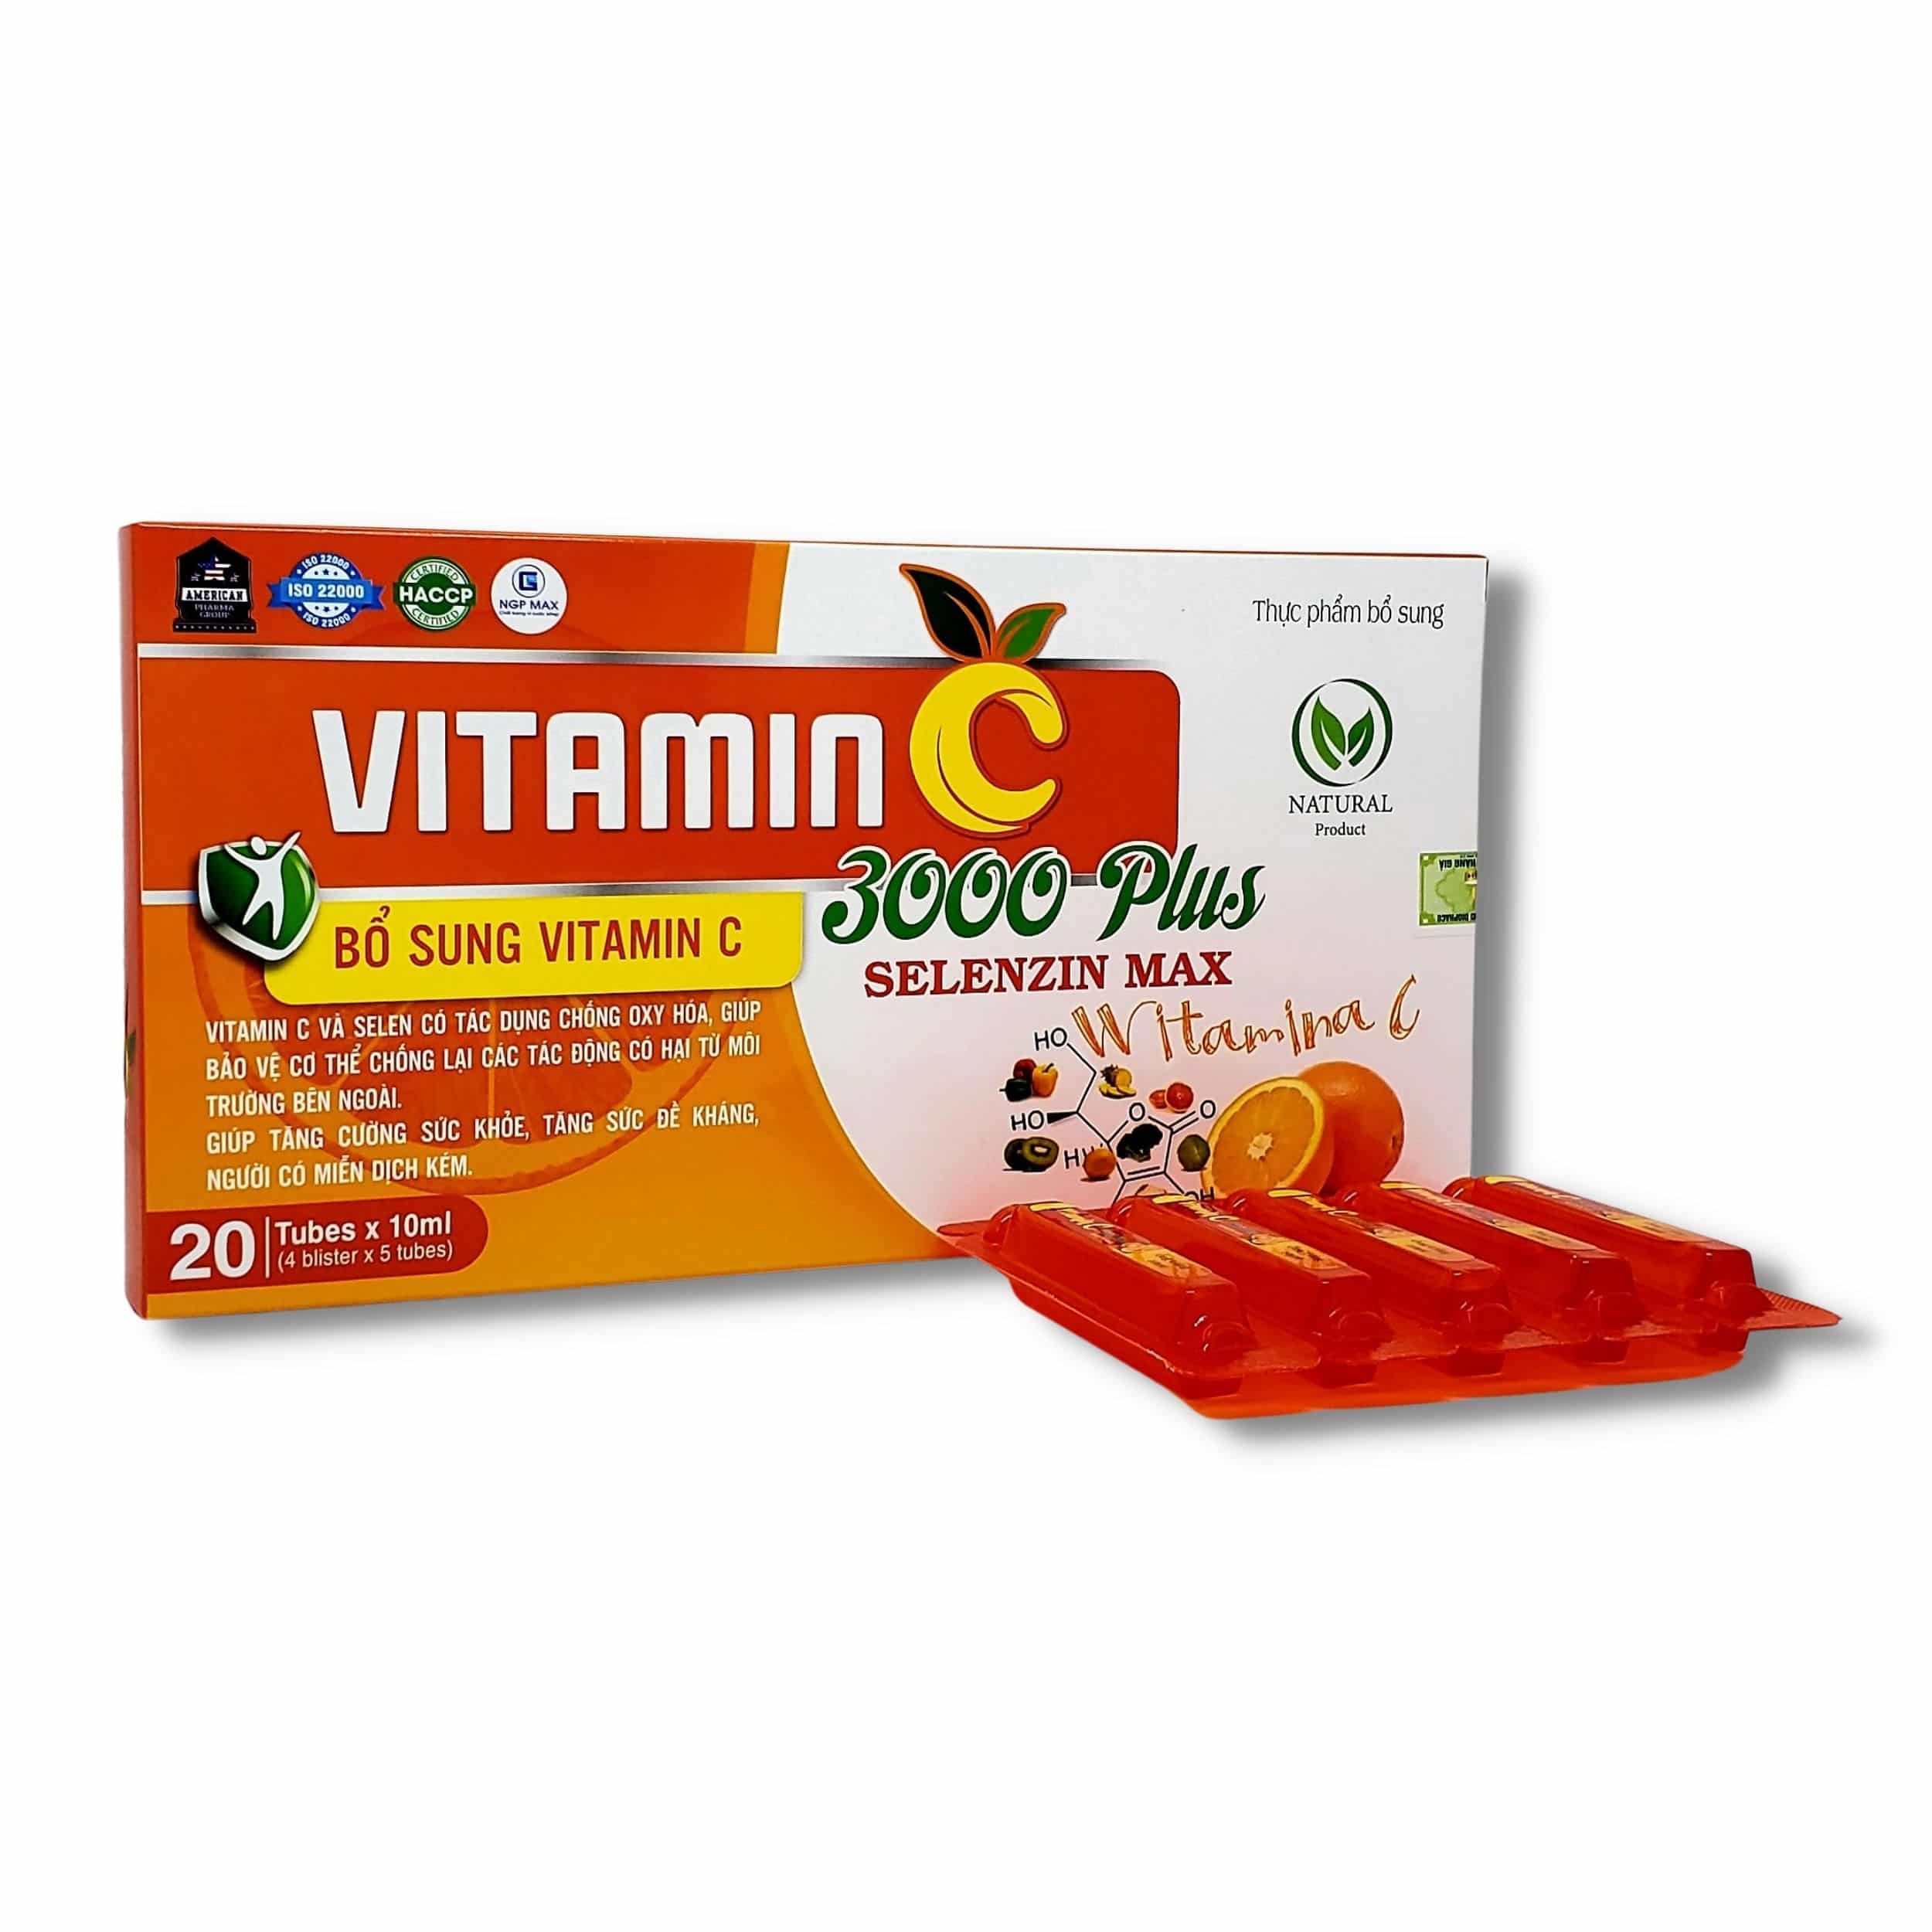 Vitamin C 3000 Plus